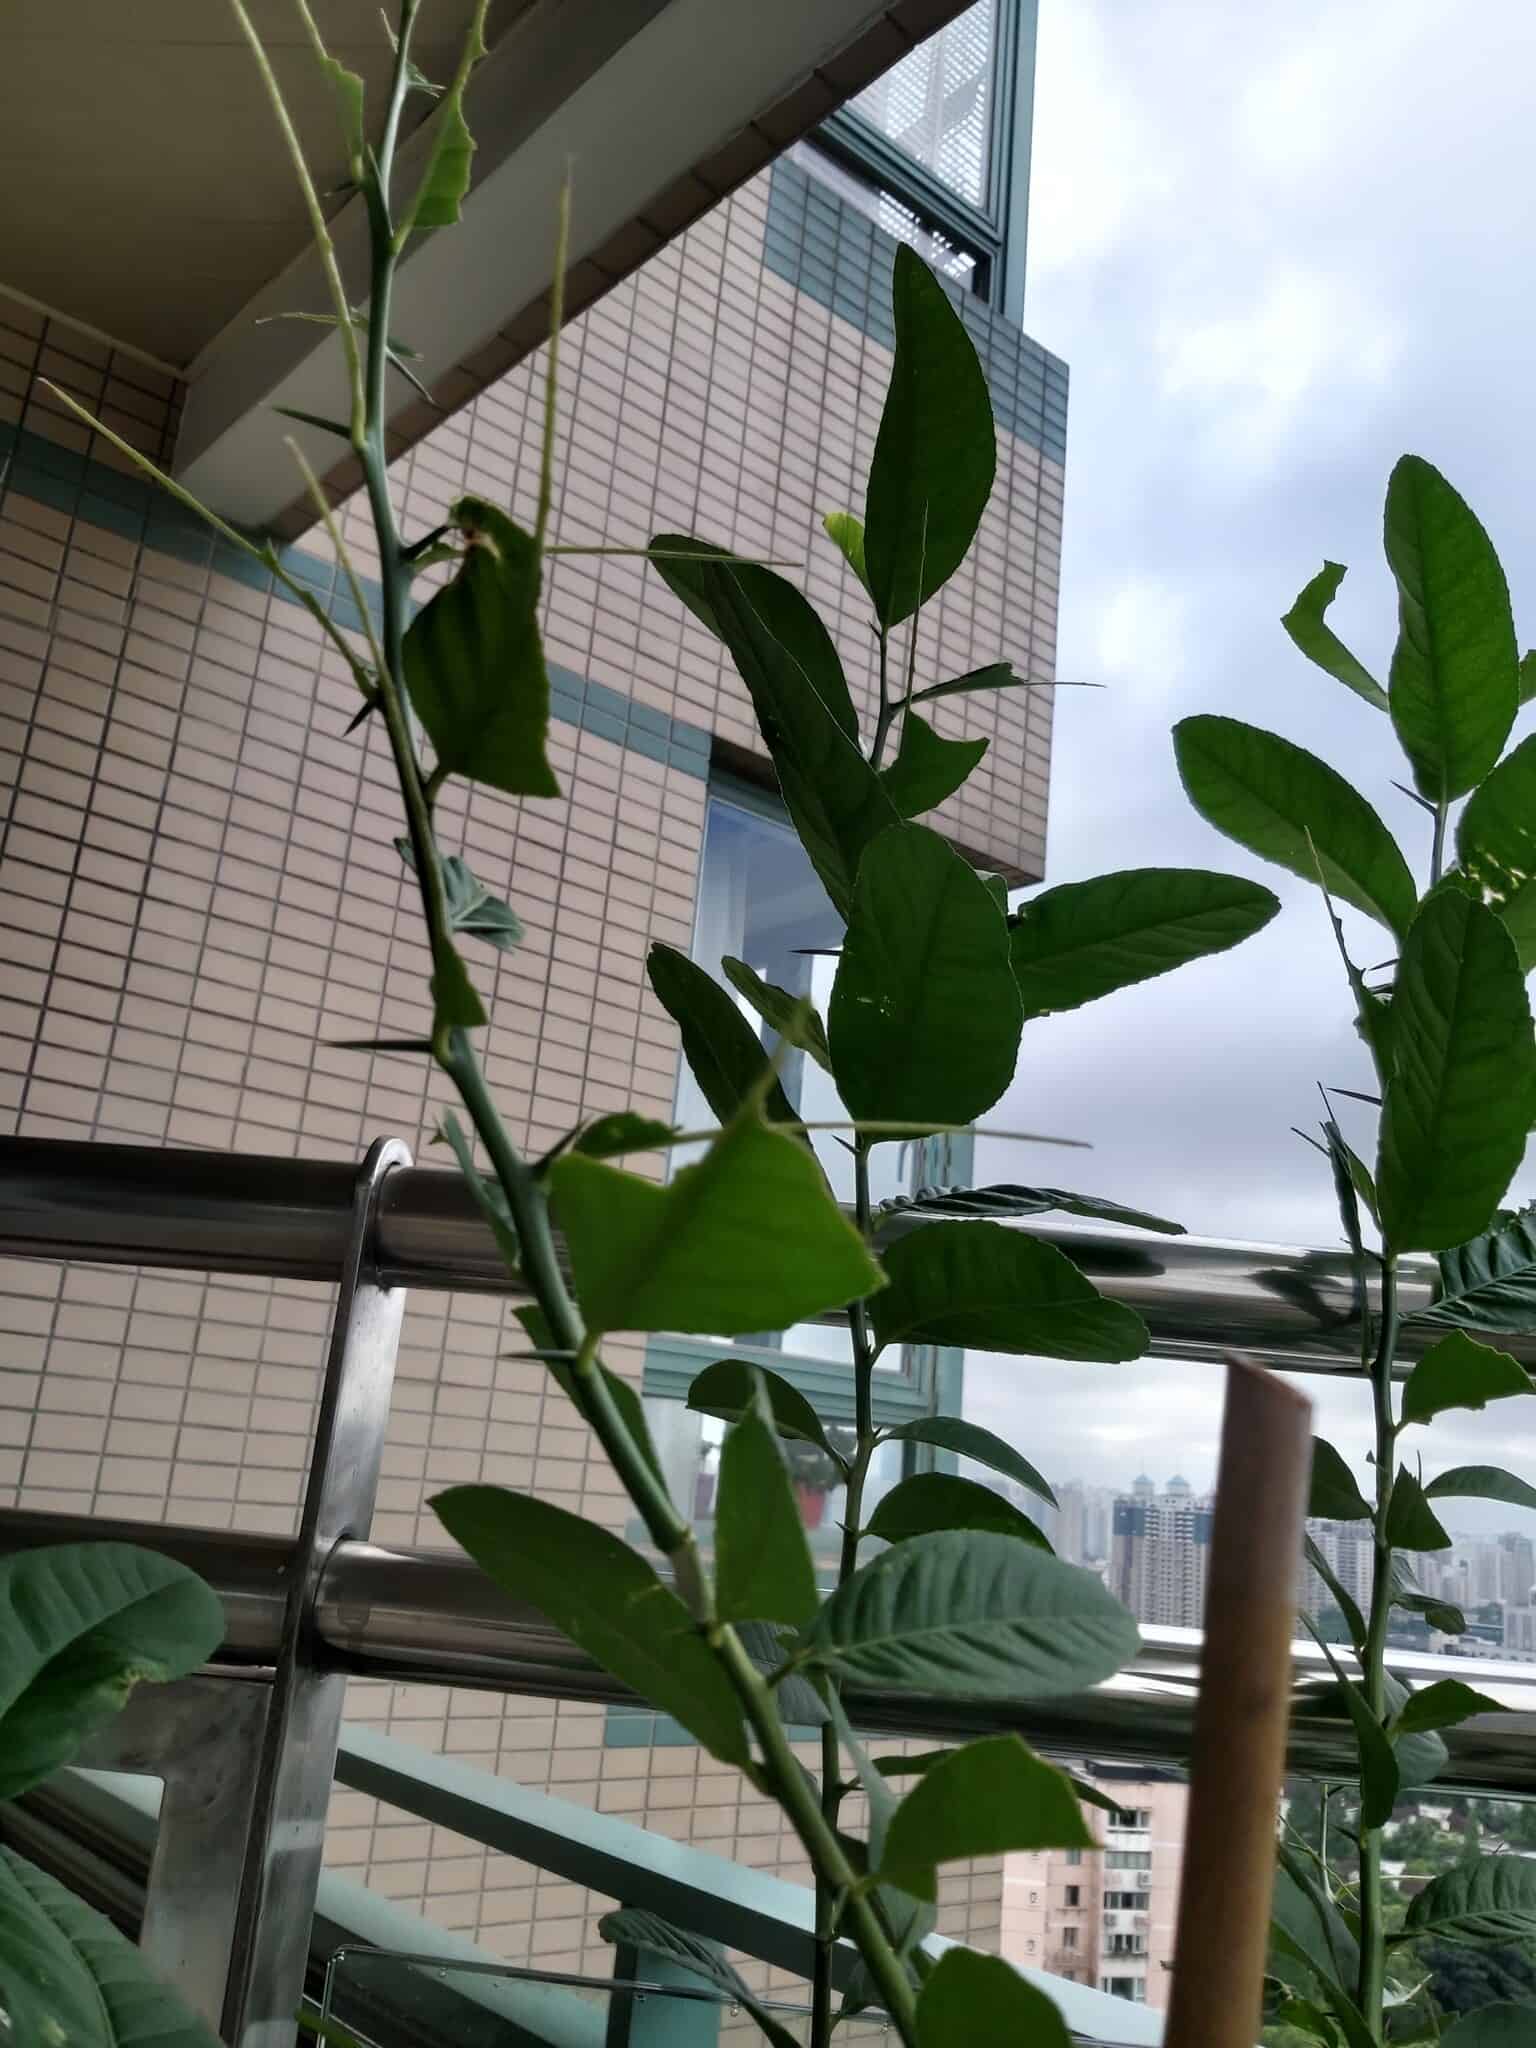 עץ לימון במרפסת הבית שלנו בשנגחאי. מרץ 2020 (צילום: יפעת פרופר)